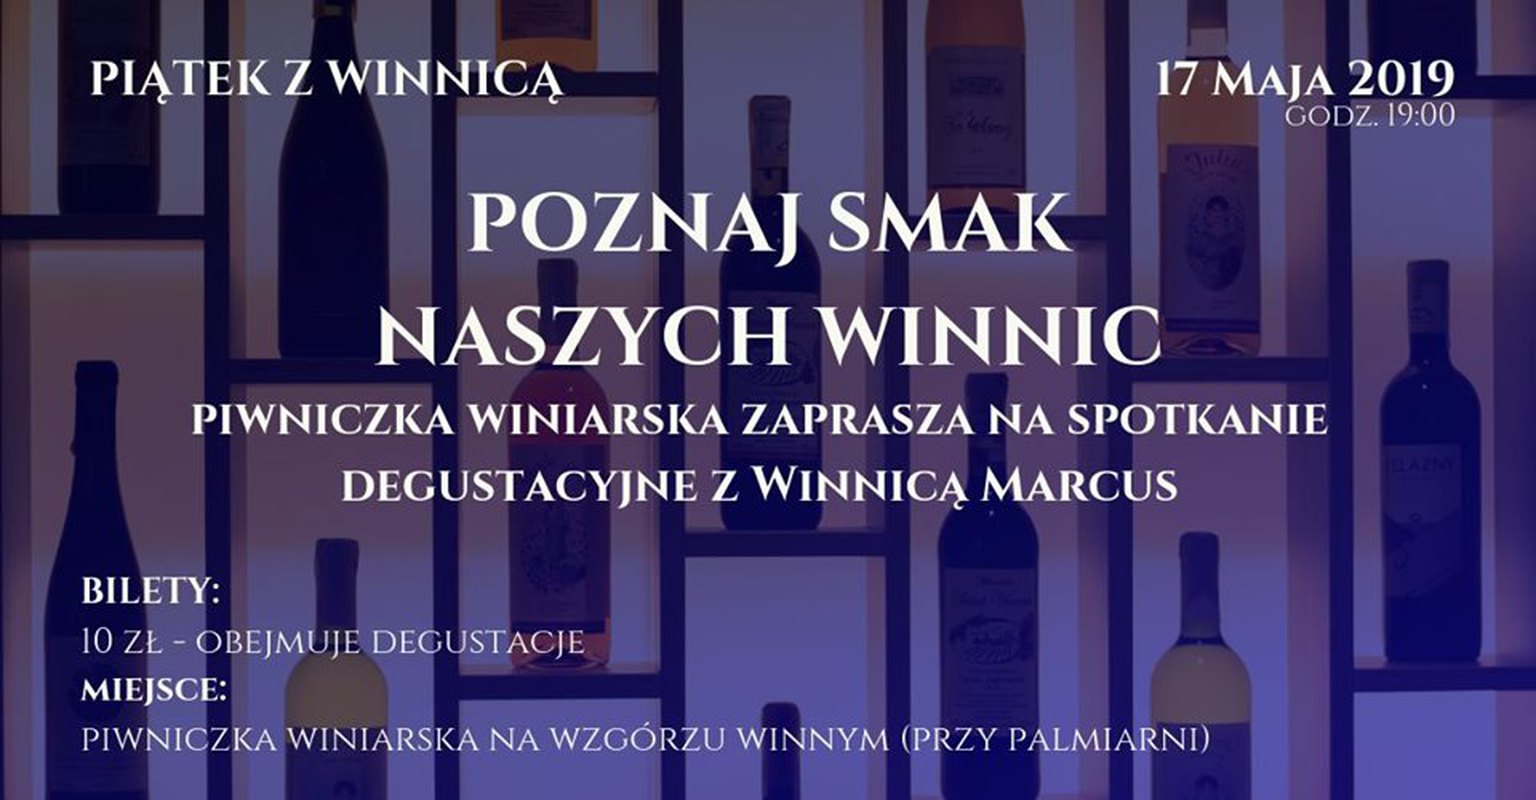 Piątek z Winnicą cz. 15 - Winnica Marcus